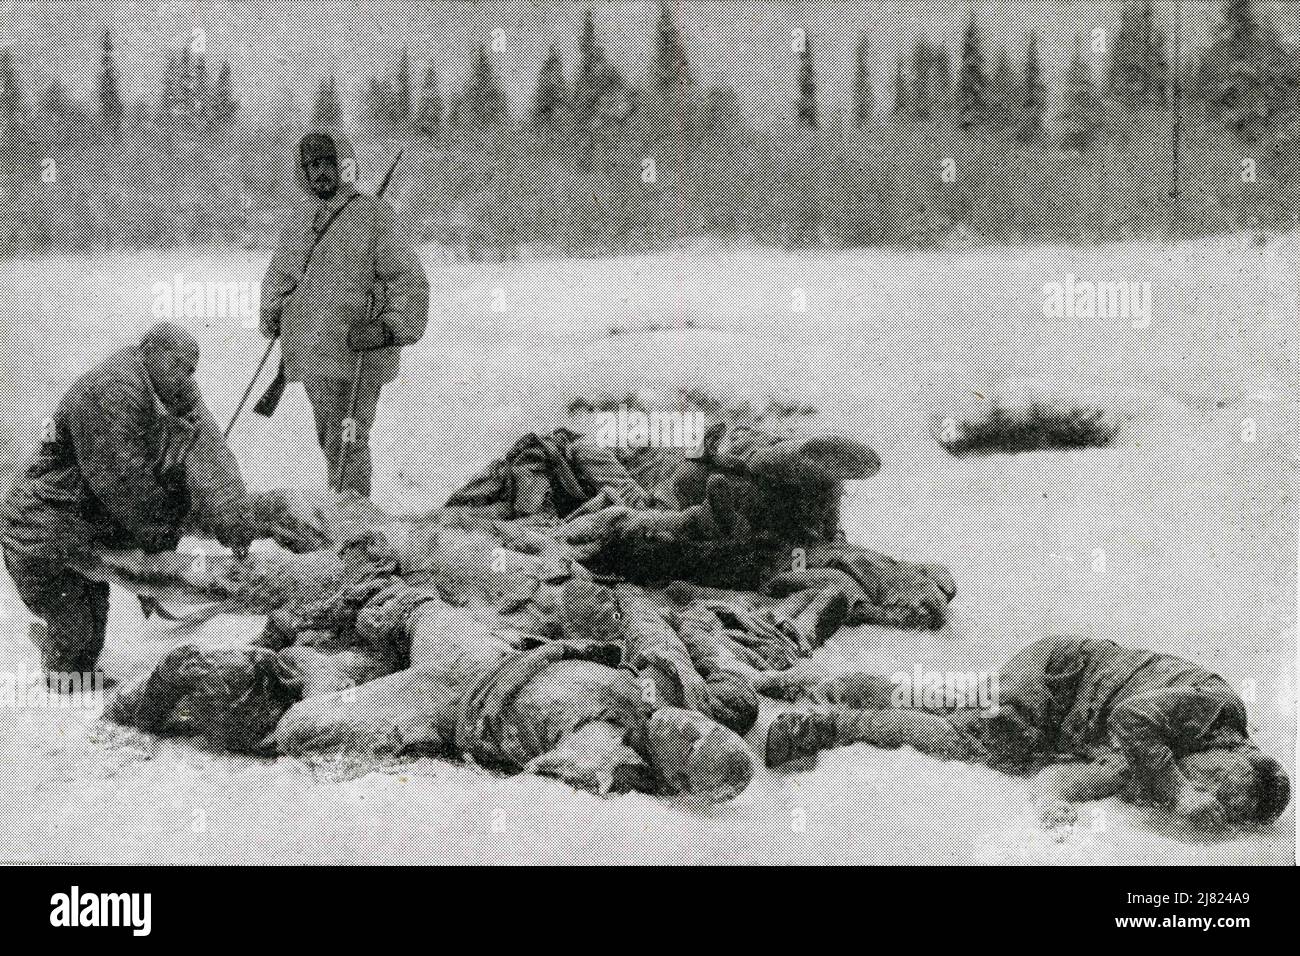 An der Finnischen Nordfront im Russisch-Finnischen Krieg - gefrorene russische Leichen auf dem Boden veranschaulichen die schreckliche Kälte, in der die gegnerischen Armeen kämpfen mussten. Finnland, Europa, vom 31. Dezember 1939. Stockfoto